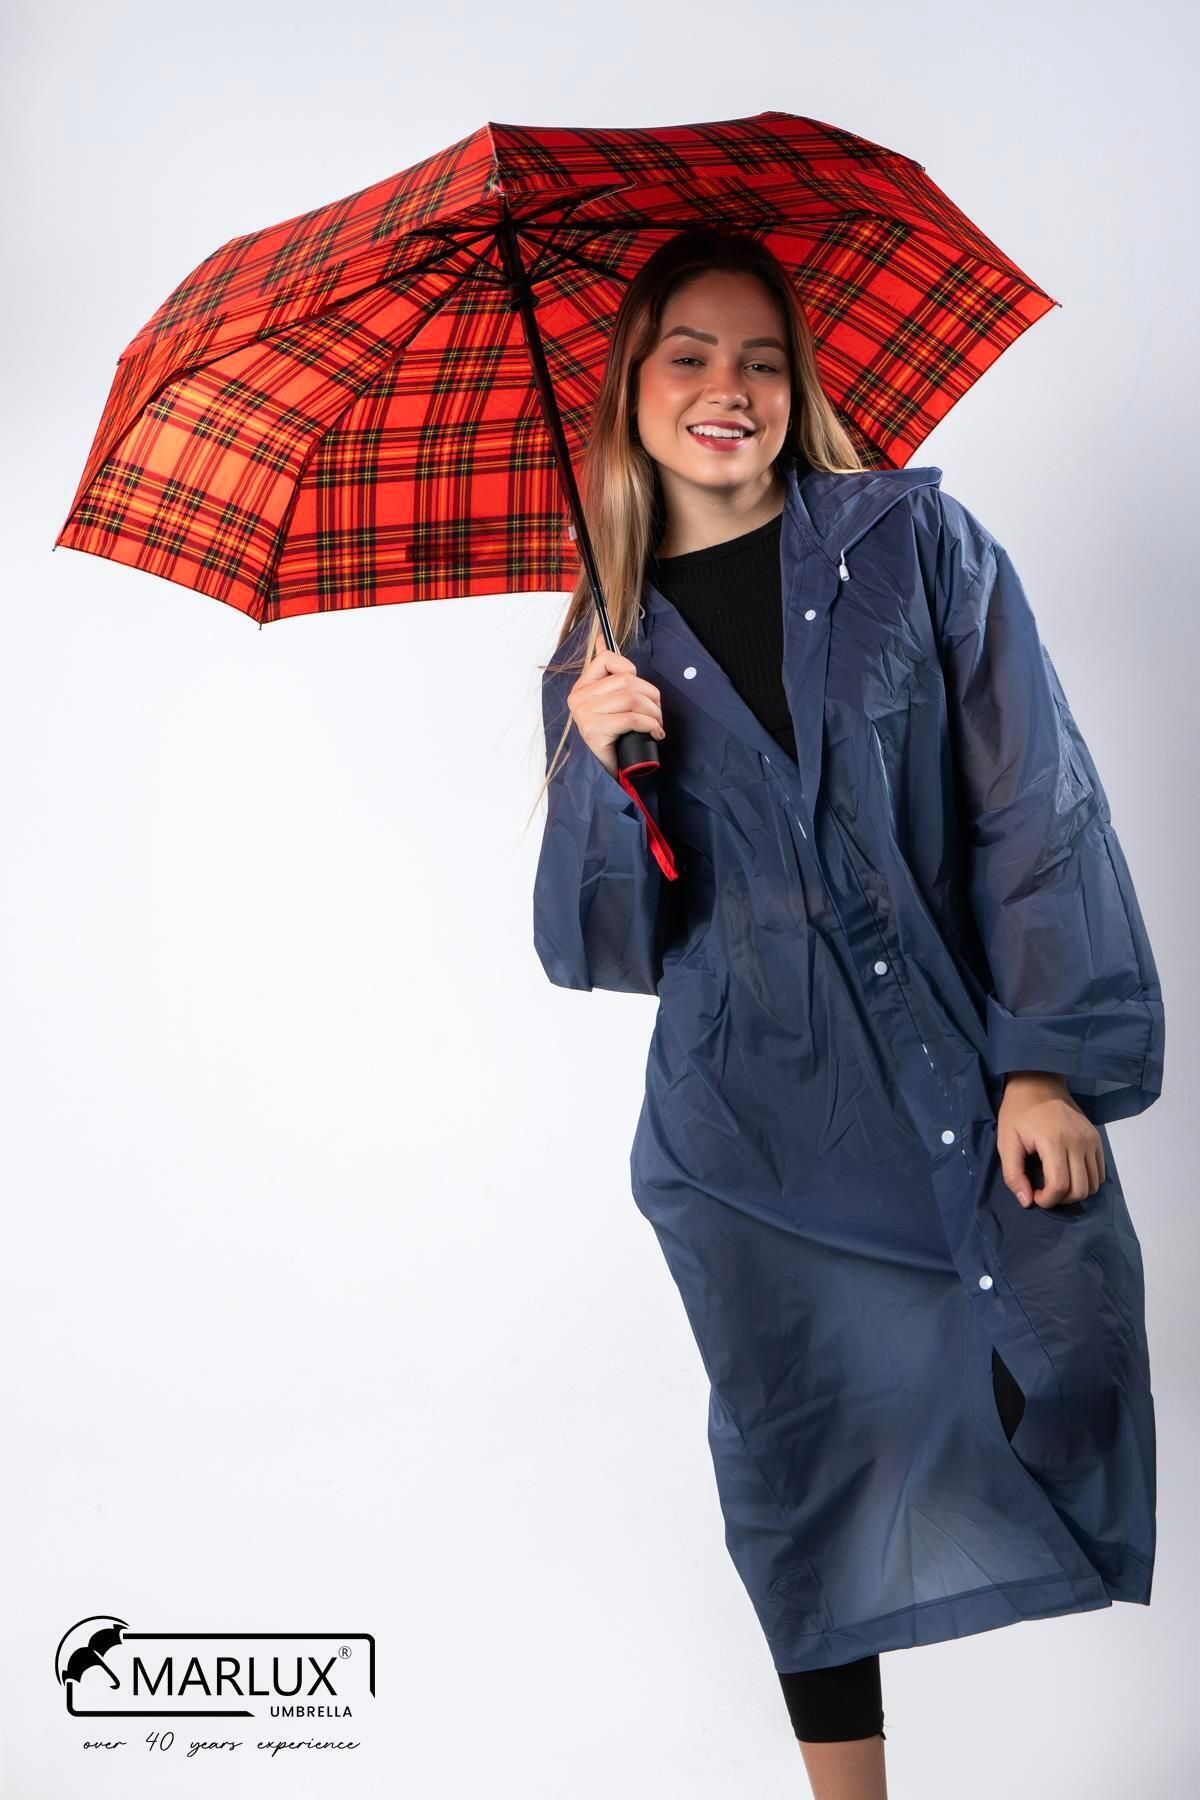 Marlux Kırmızı Ekoseli Tam Otomatik Kadın Şemsiye Şemsiye M21mar703r003